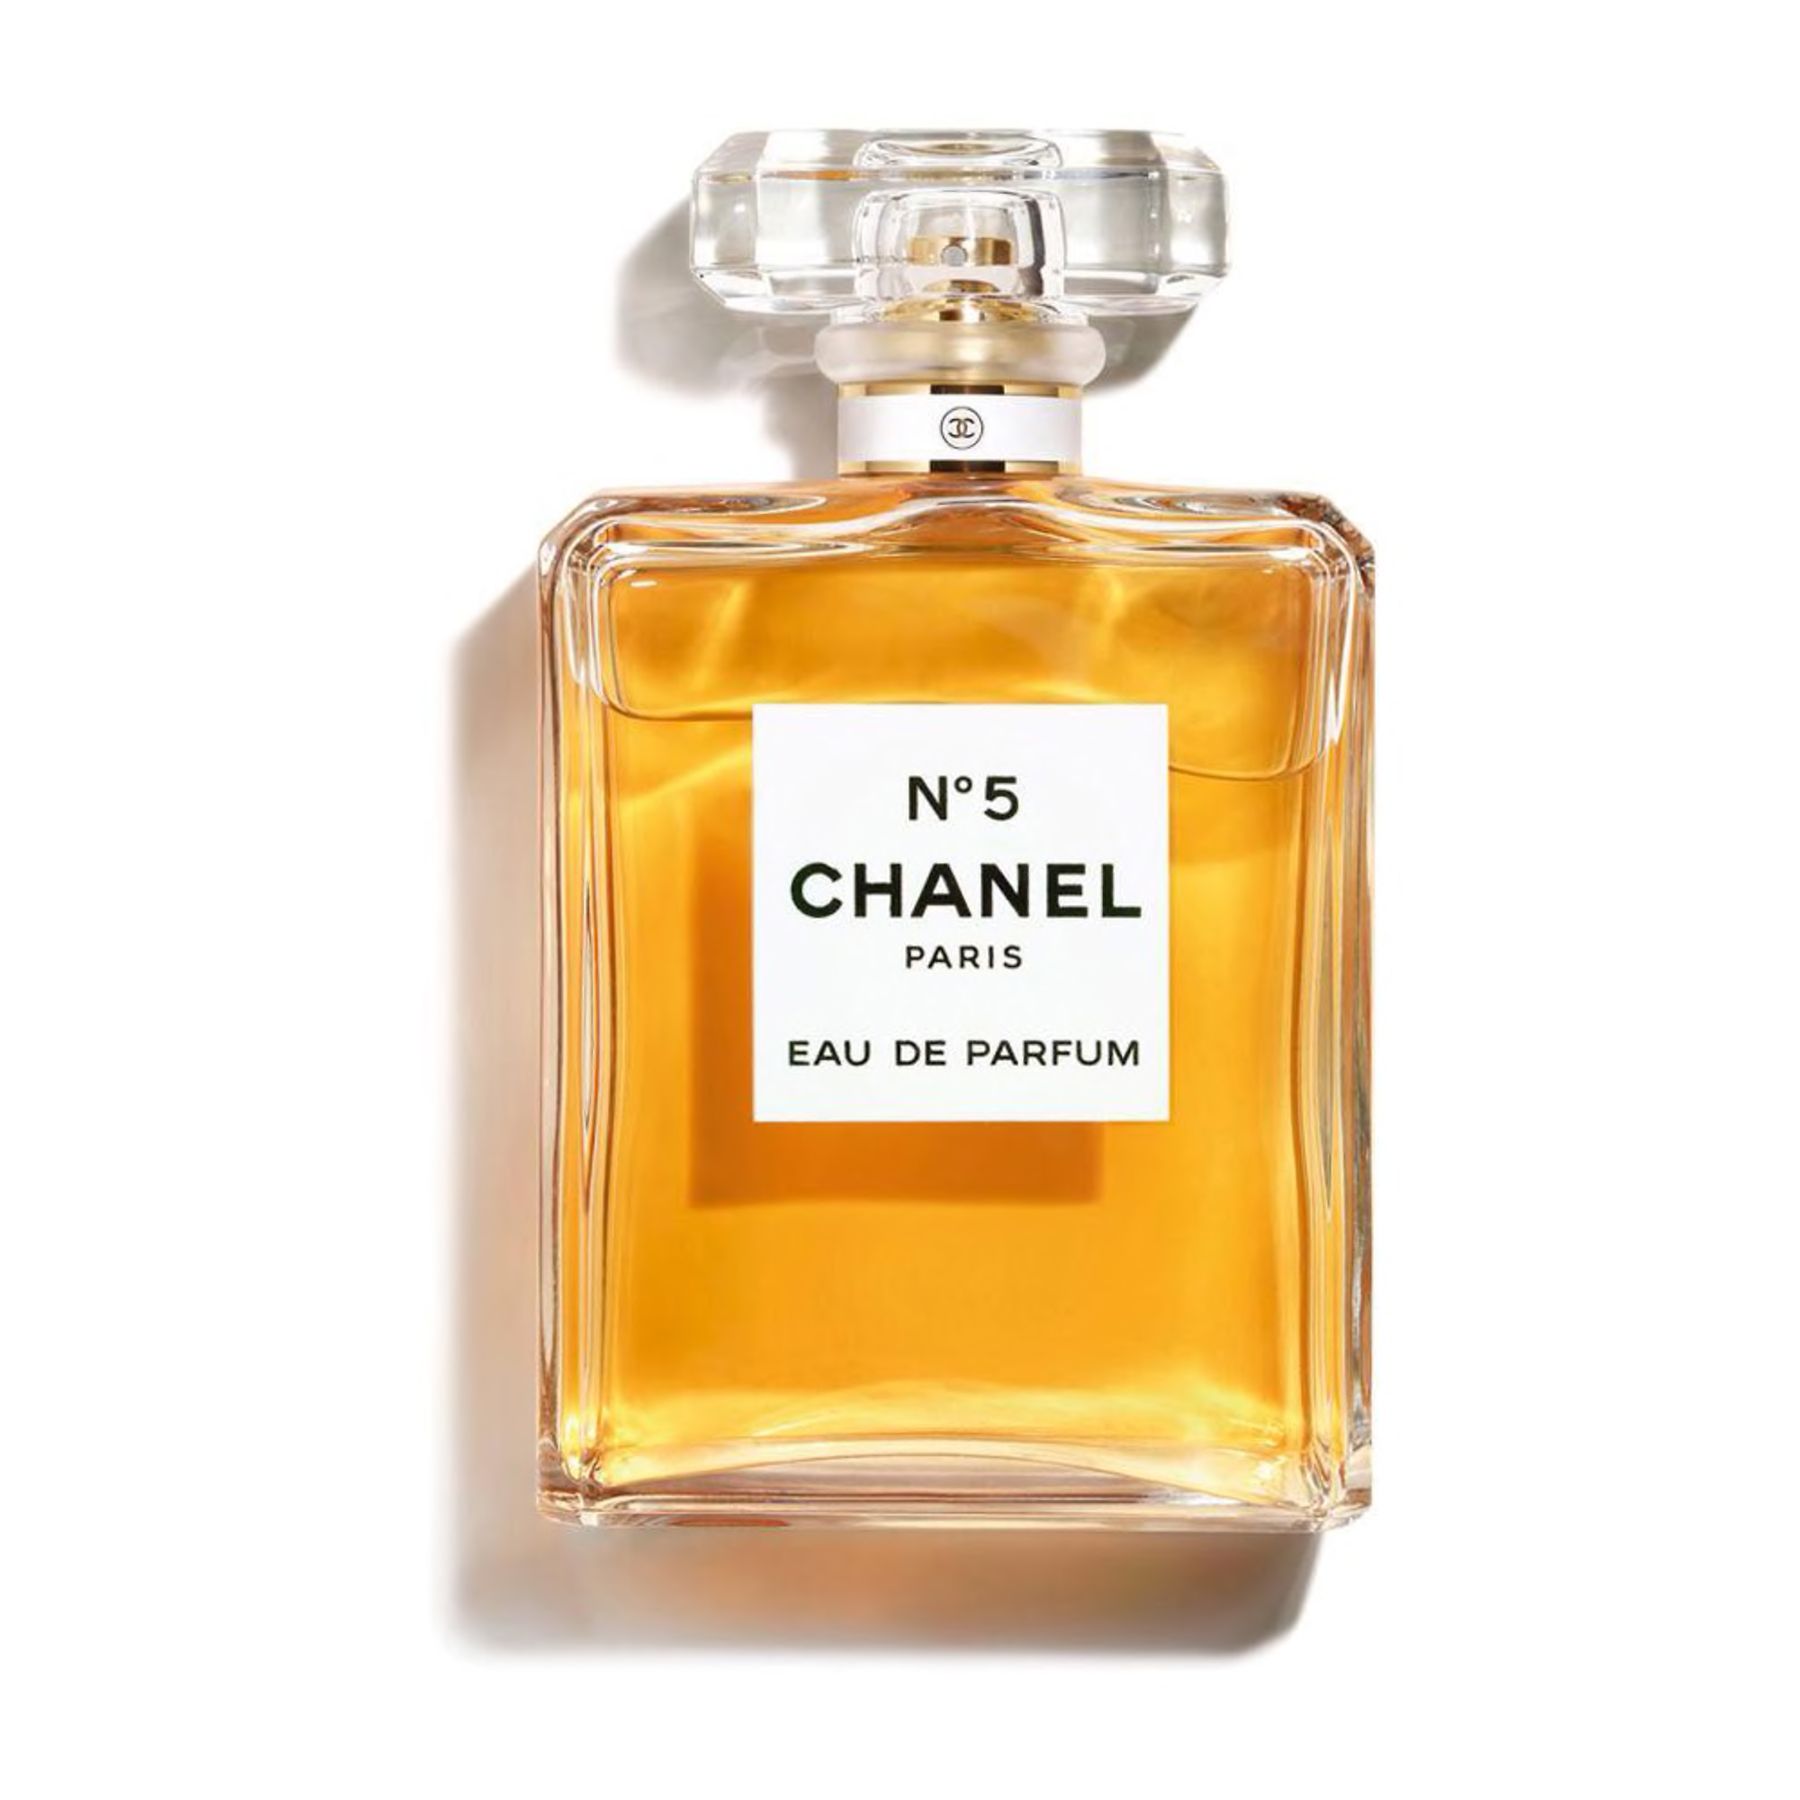 საუკეთესო საჩუქრები ბებიისთვის - Chanel No5 პარფიუმერია